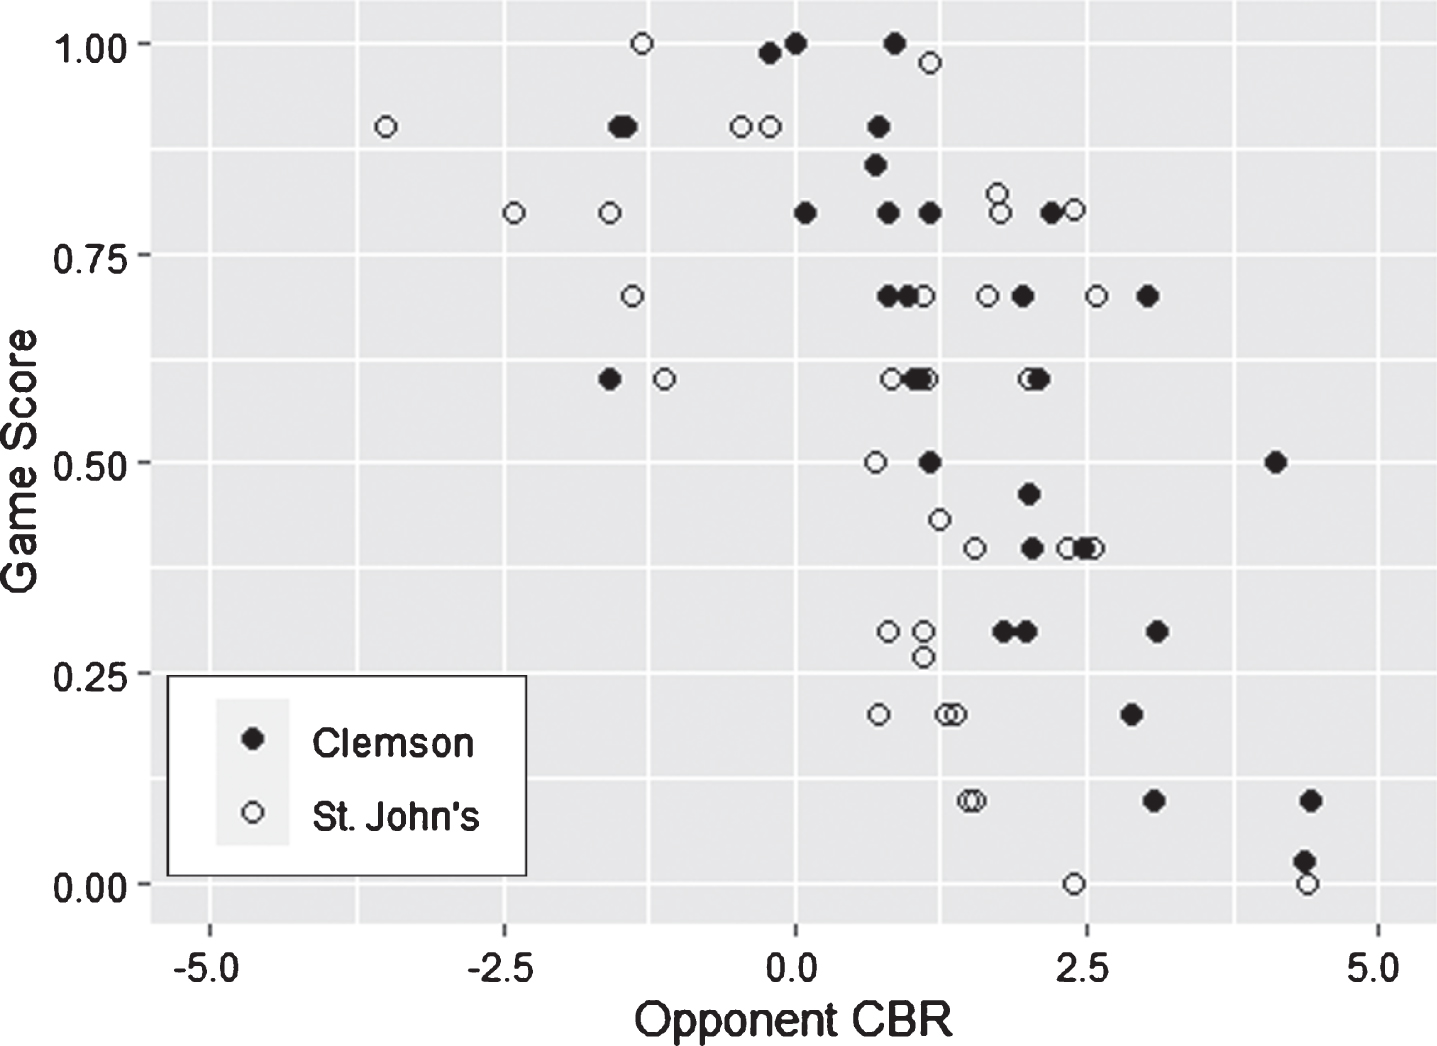 Game Score vs. Opponent CBR – Clemson vs. St. John’s.